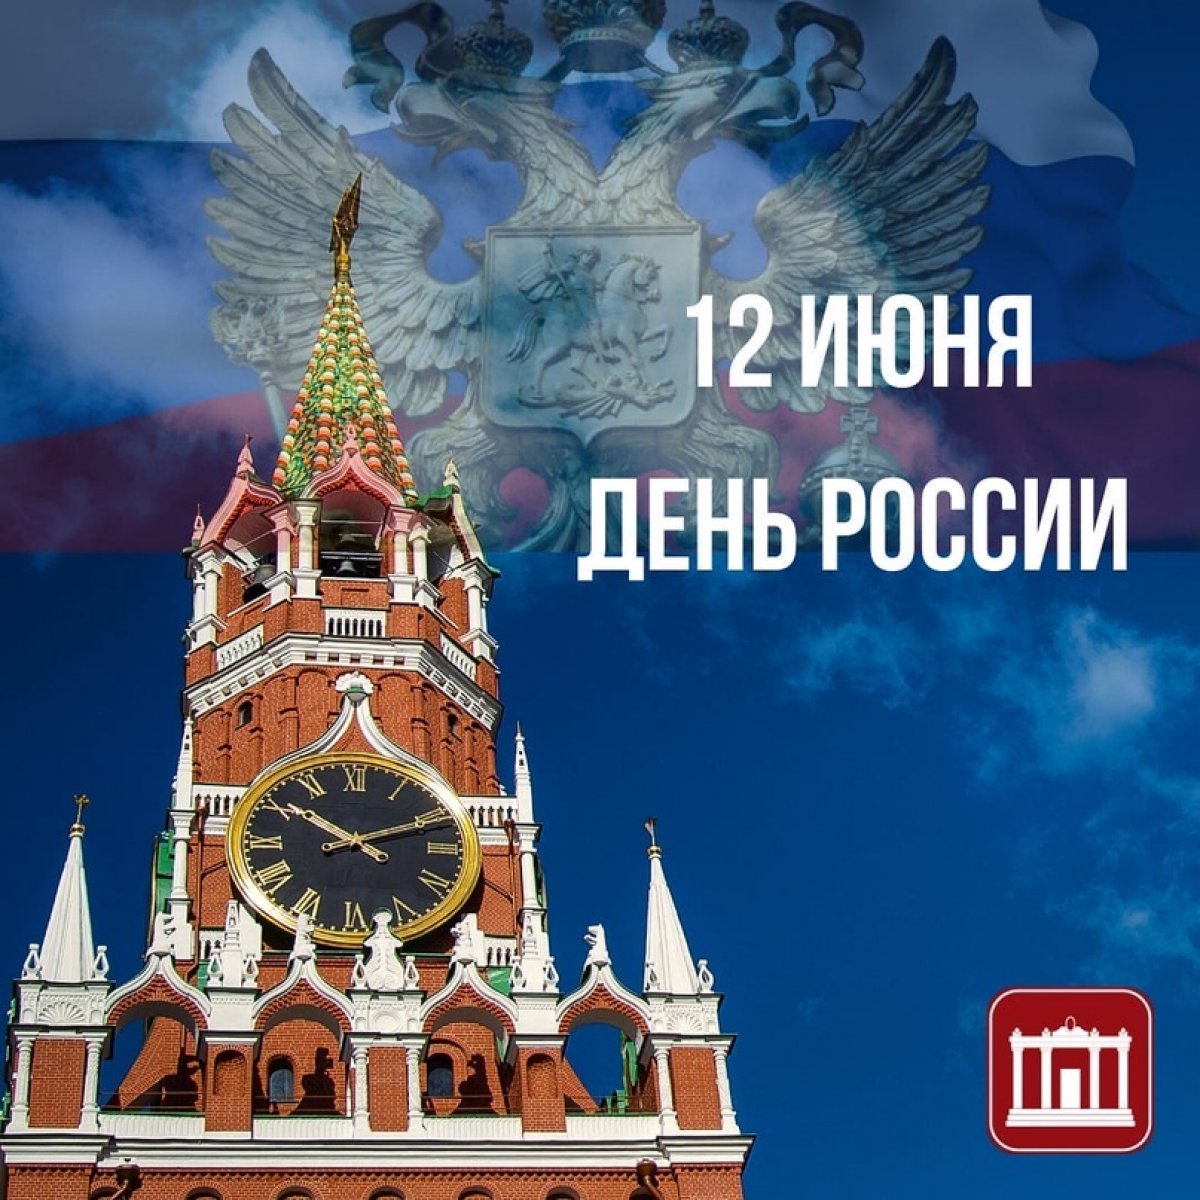 Сегодня 12 июня 2020 года и мы отмечаем день великой страны, День России🇷🇺 Россия – это все мы, каждый из нас!